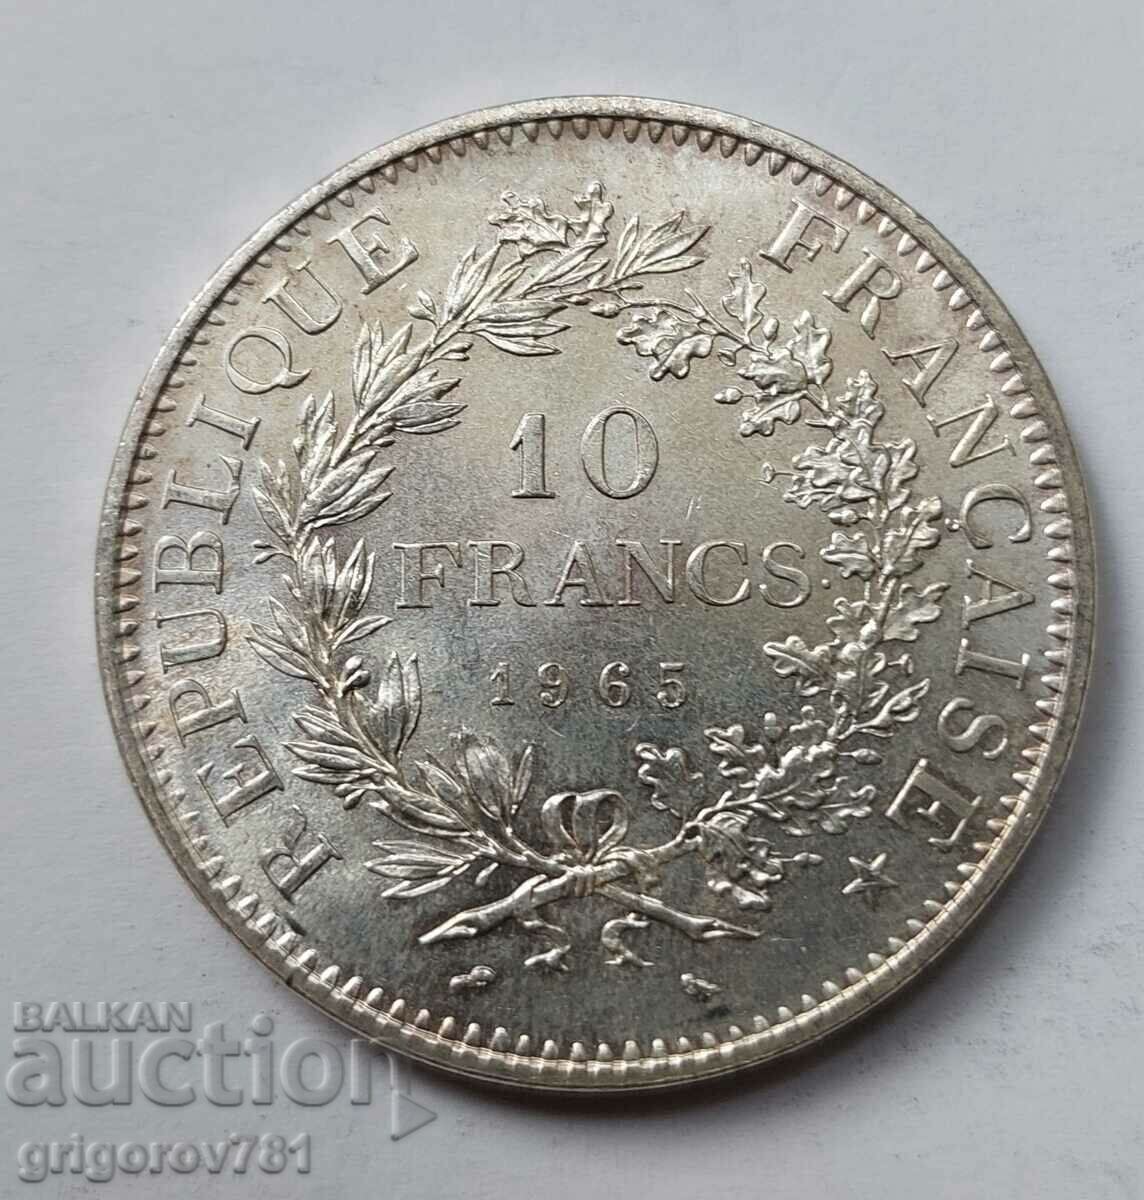 10 Φράγκα Ασήμι Γαλλία 1965 - Ασημένιο νόμισμα #48